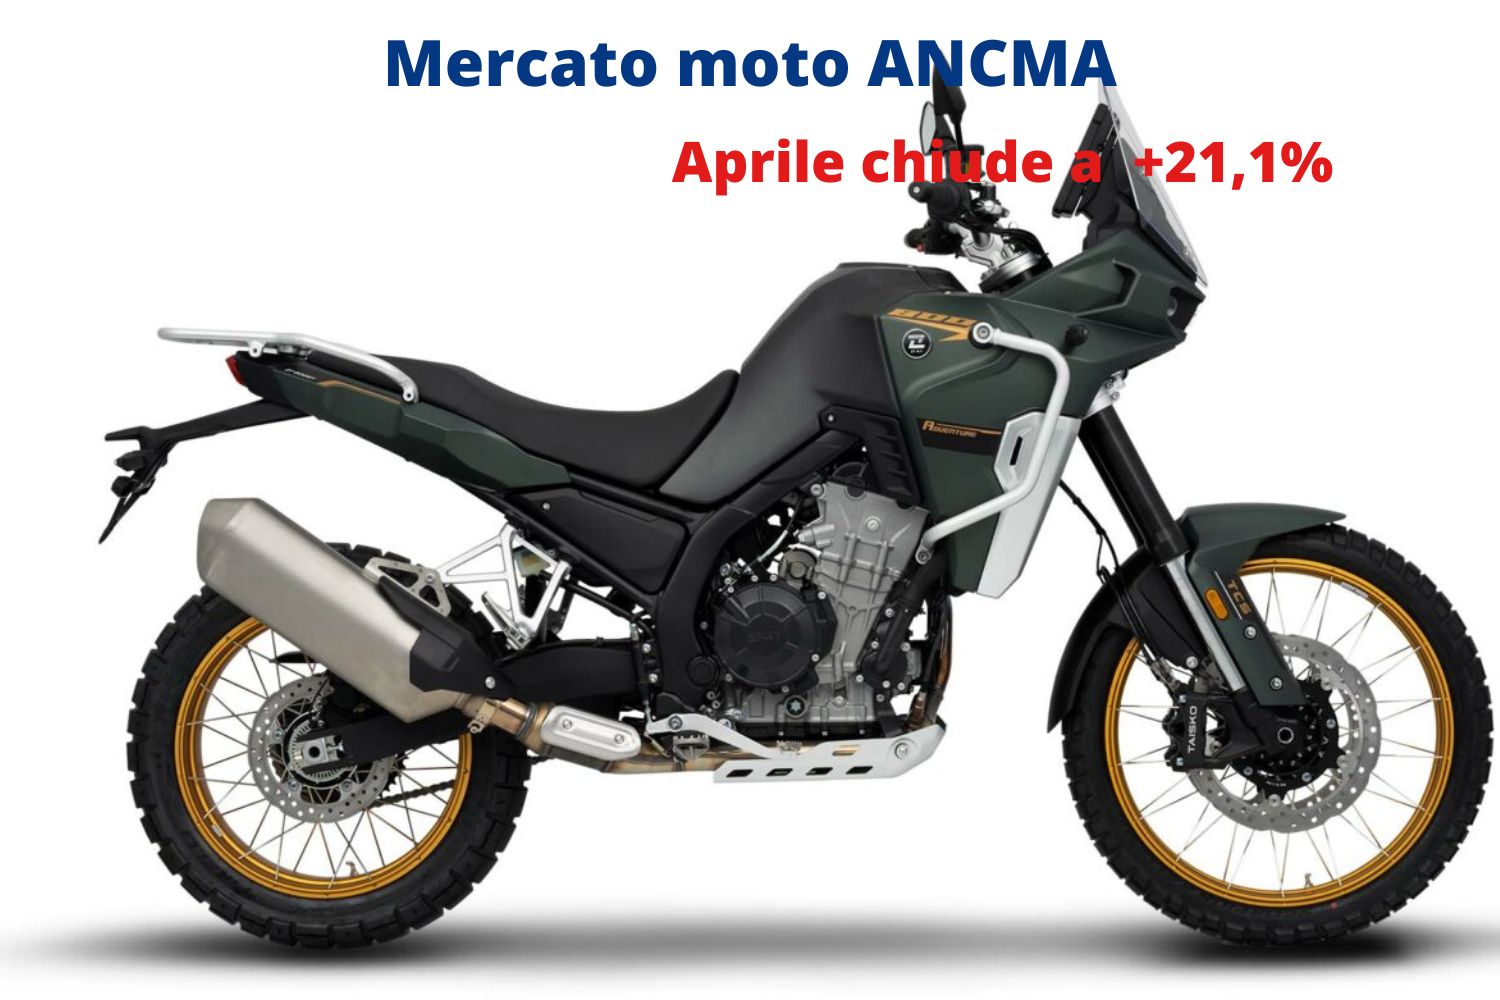 Mercato Moto